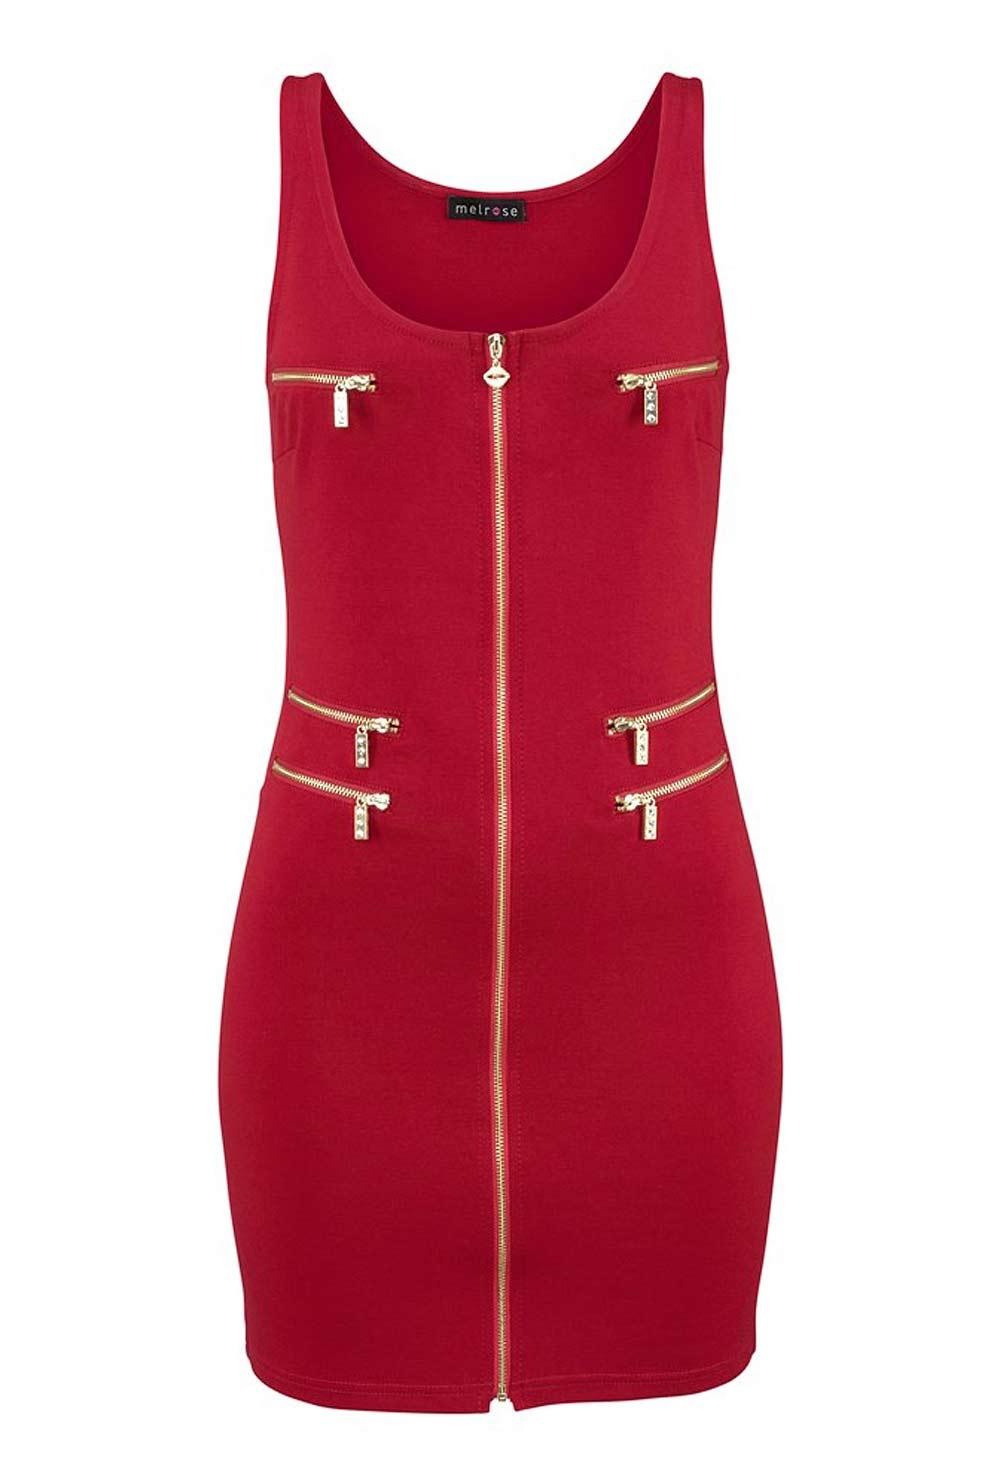 Reißverschluß-Kleid rot Größe 38 | Kleider | Outlet Mode-Shop